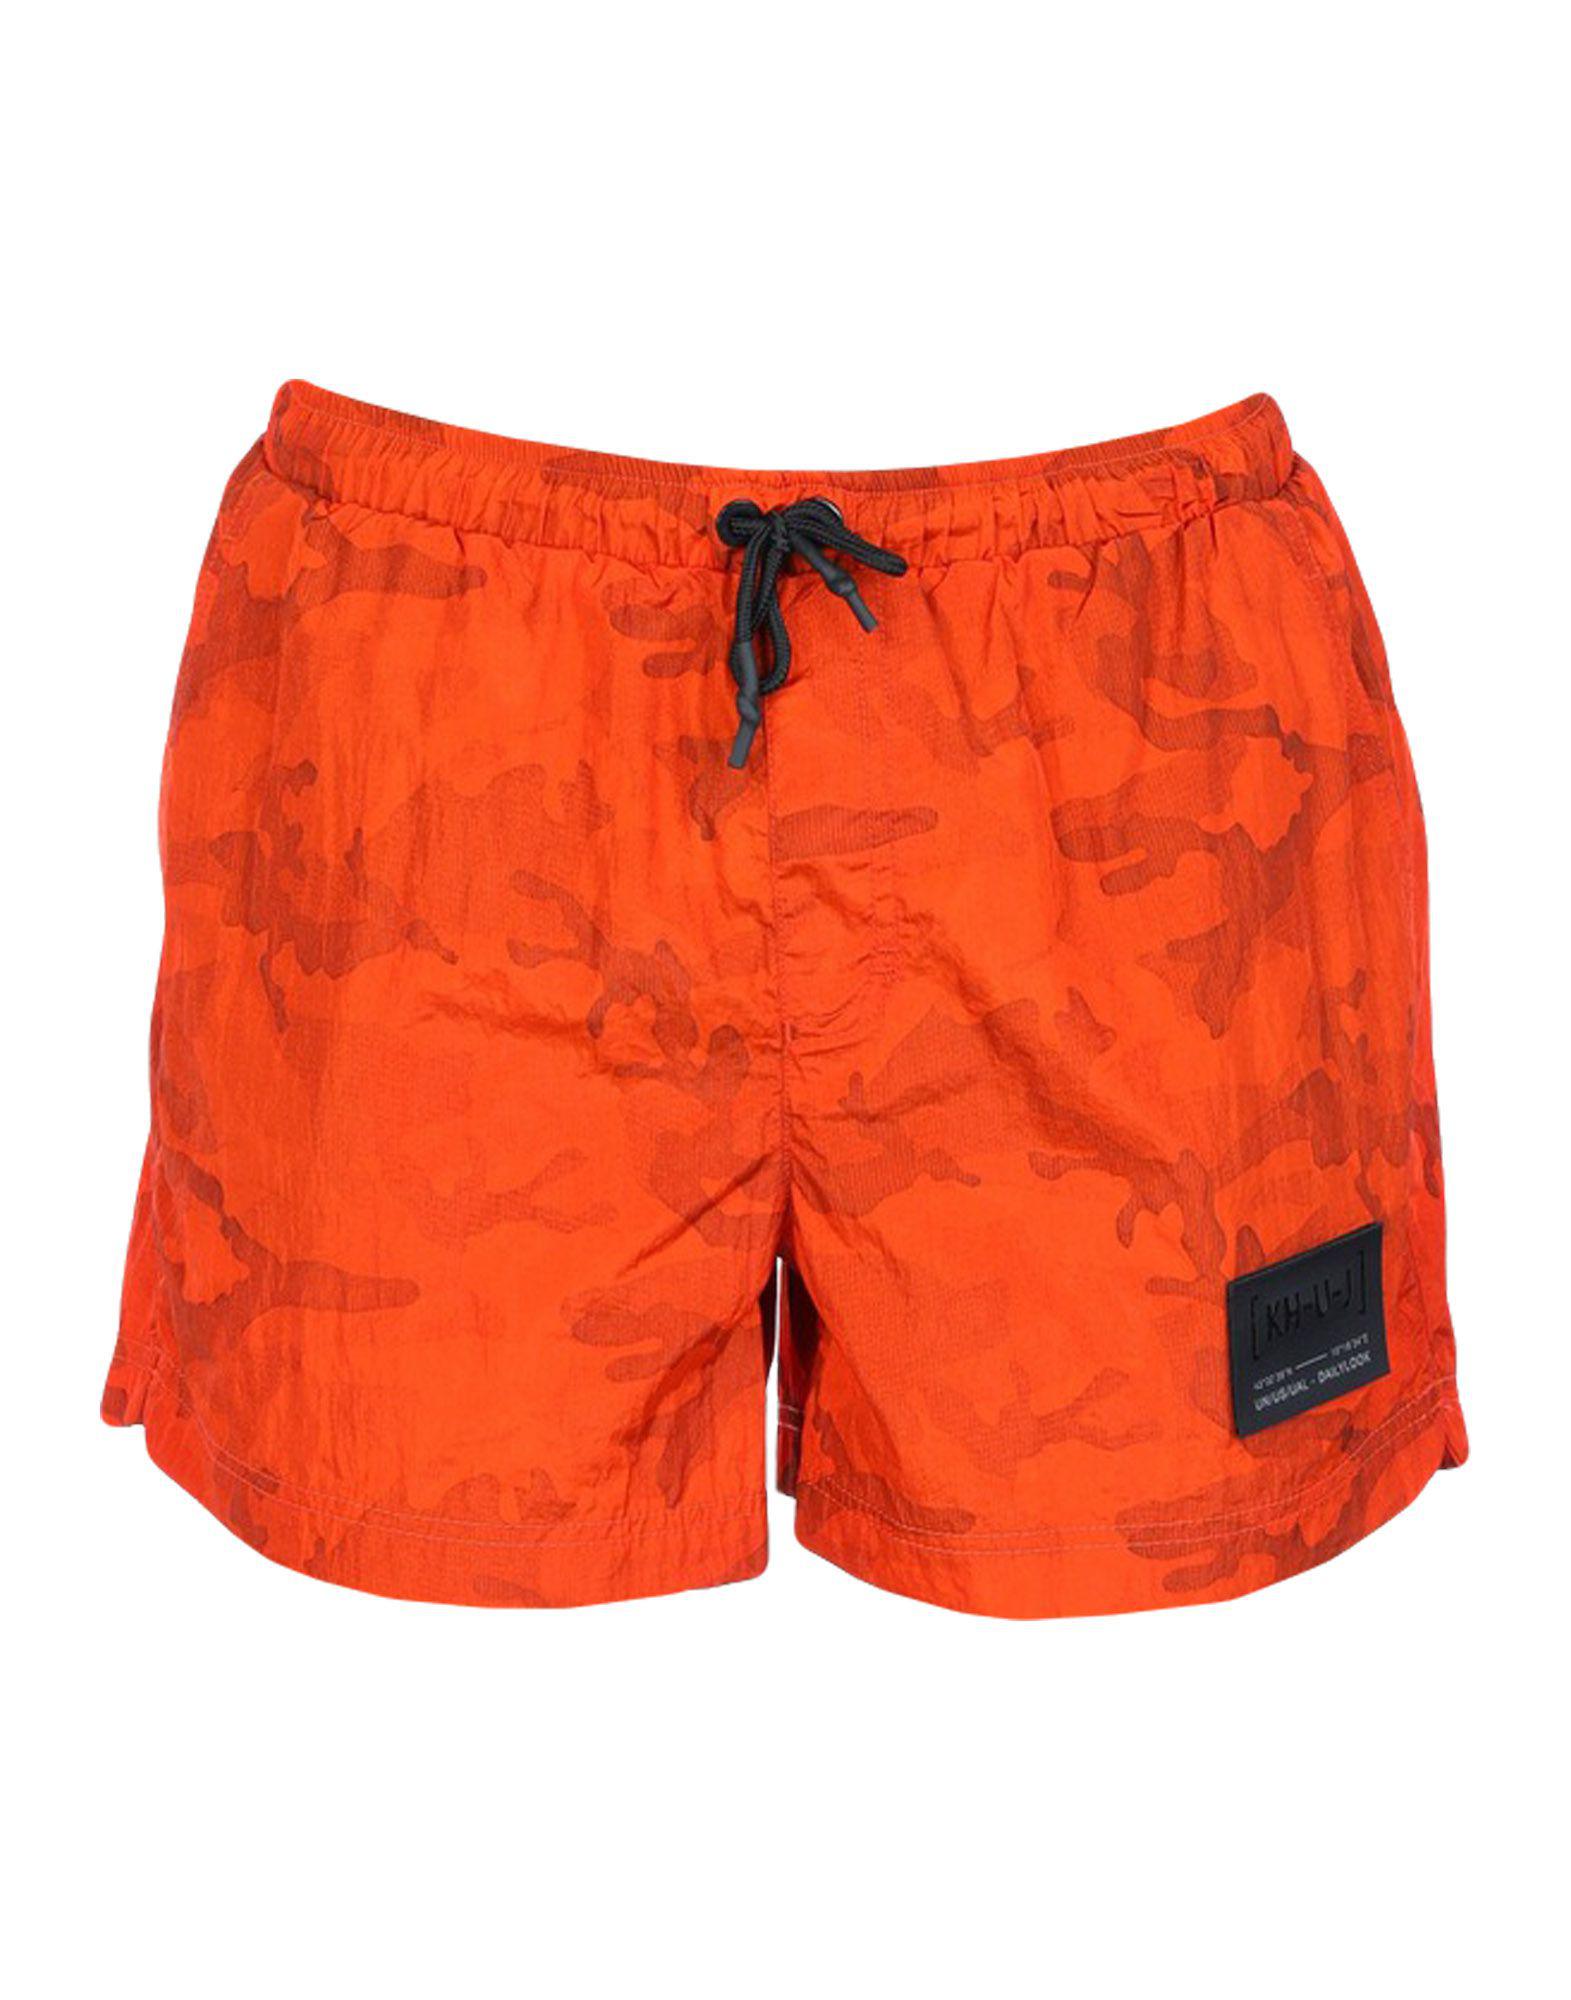 Kilt Heritage Synthetic Swim Trunks in Orange for Men - Lyst